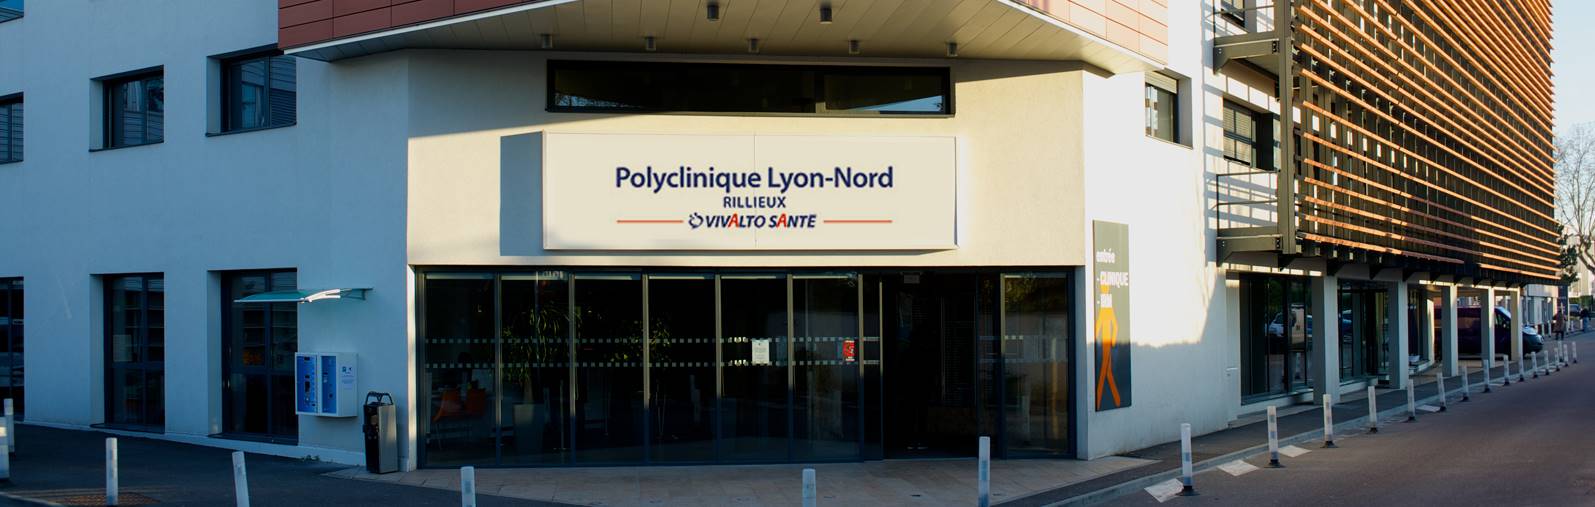 Polyclinique Lyon Nord Rillieux